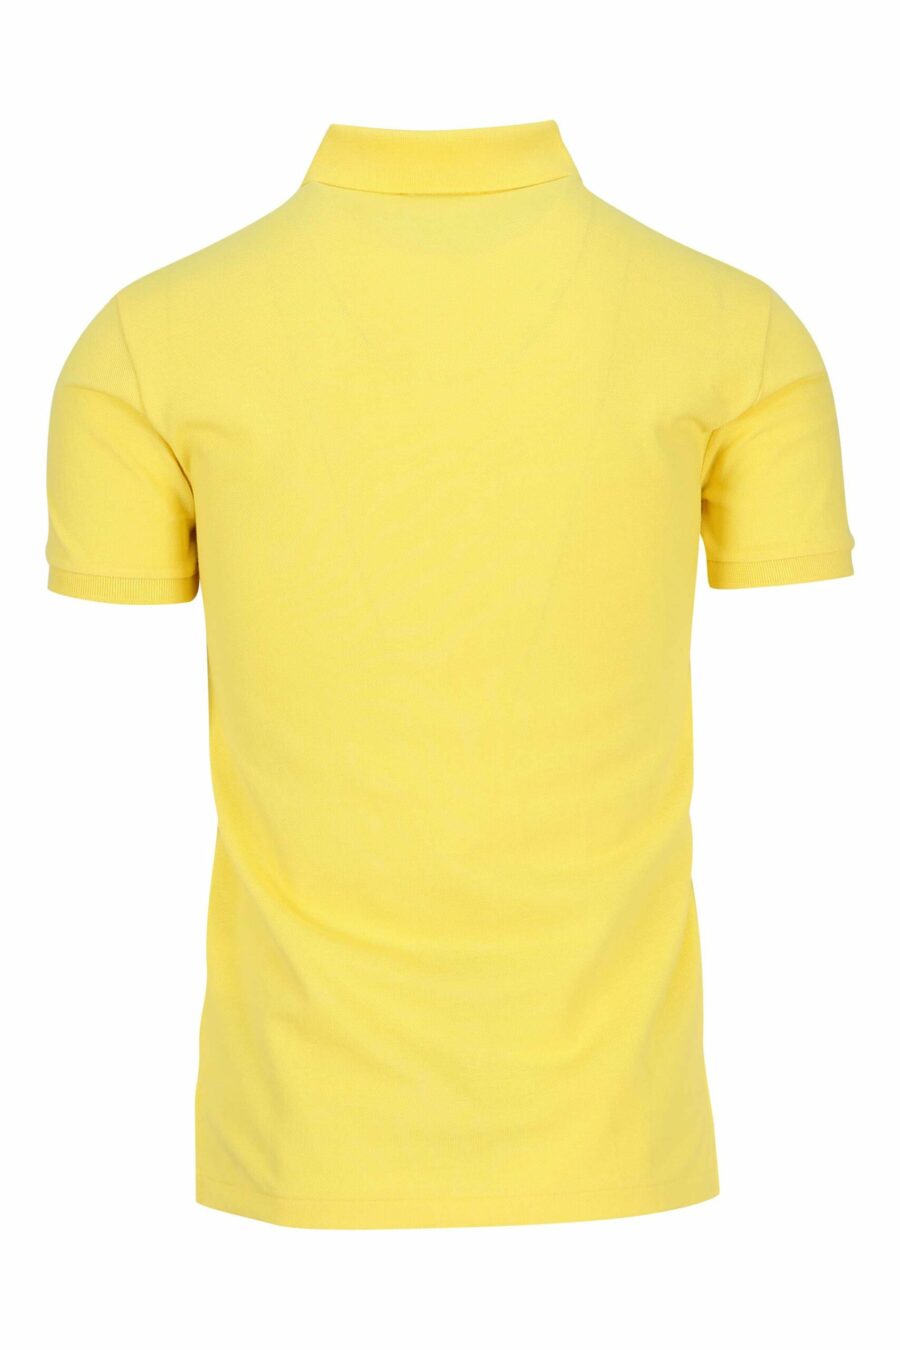 Gelbes und blaues T-Shirt mit Mini-Logo "Polo" - 3616535972186 1 skaliert